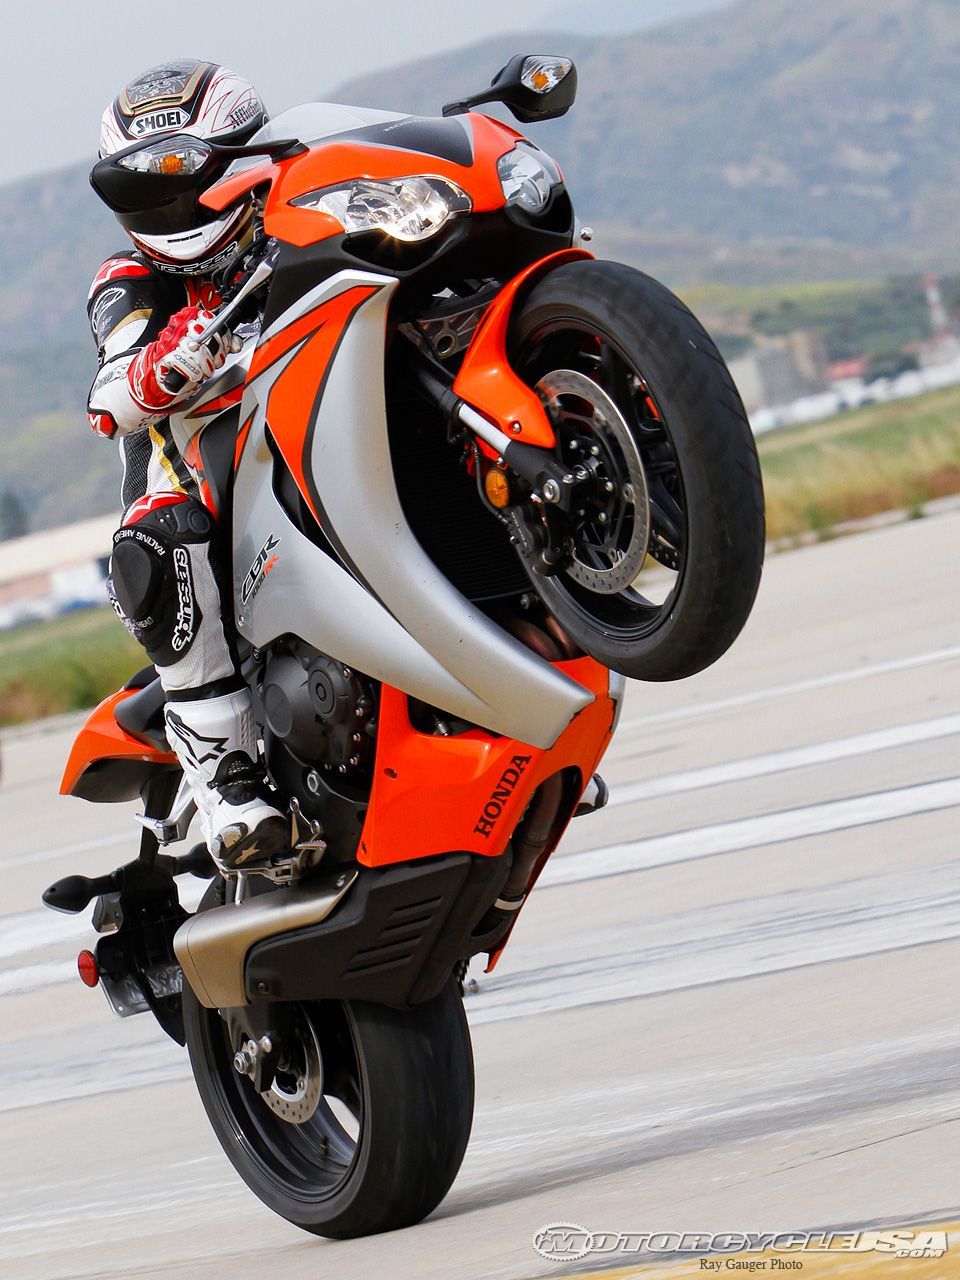 Need For Speed. Motos esportivas, Motos, Motos customizadas